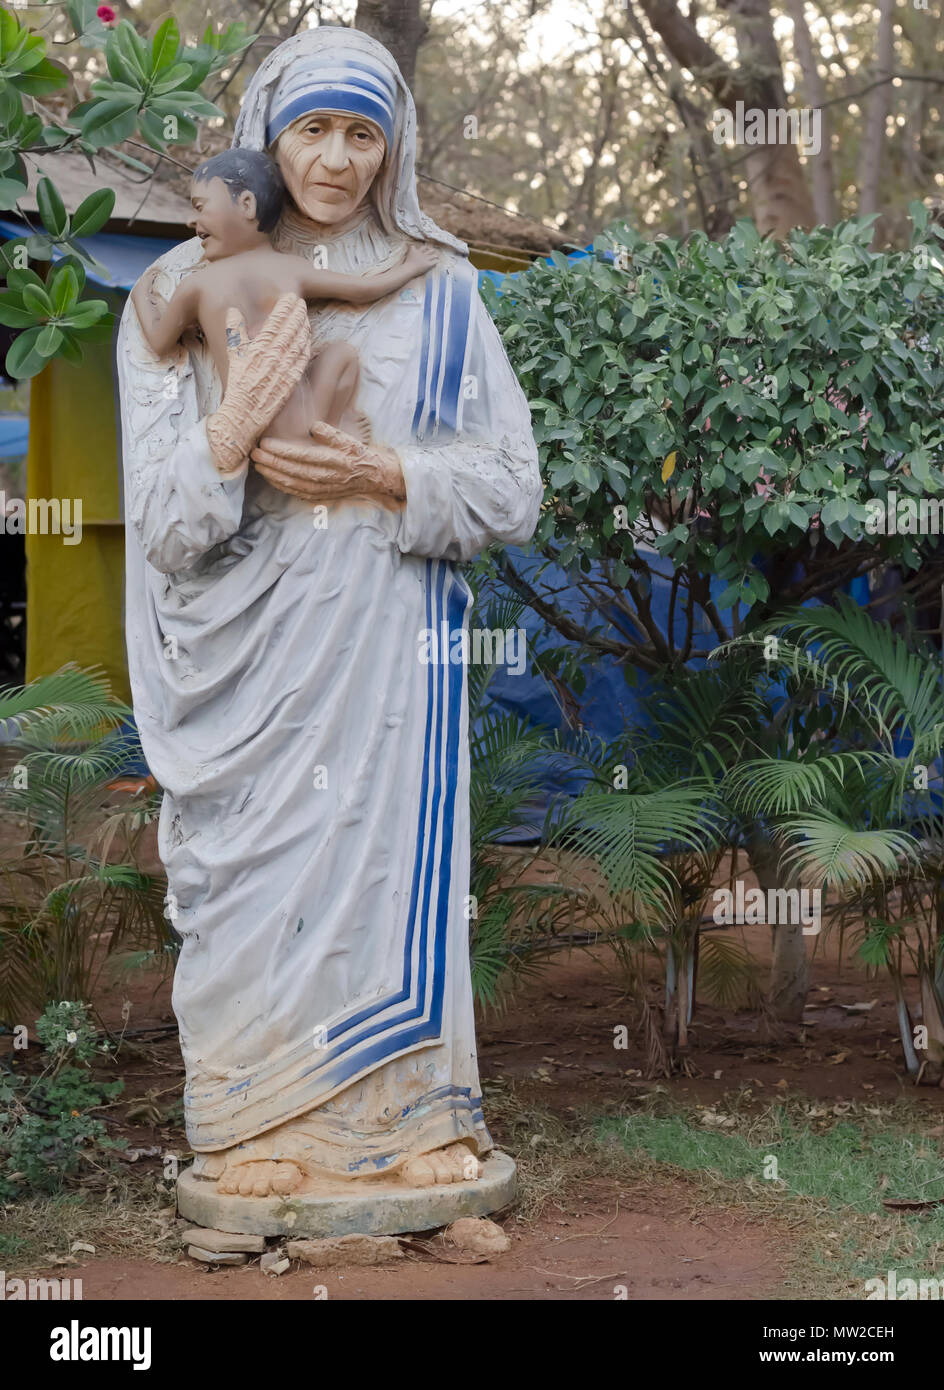 Una argilla spiovente statua di Madre Teresa di Calcutta, fondatore delle Missionarie della Carità, a Shilparamam arti e mestieri village, Hyderabad, Telangana, India. Foto Stock